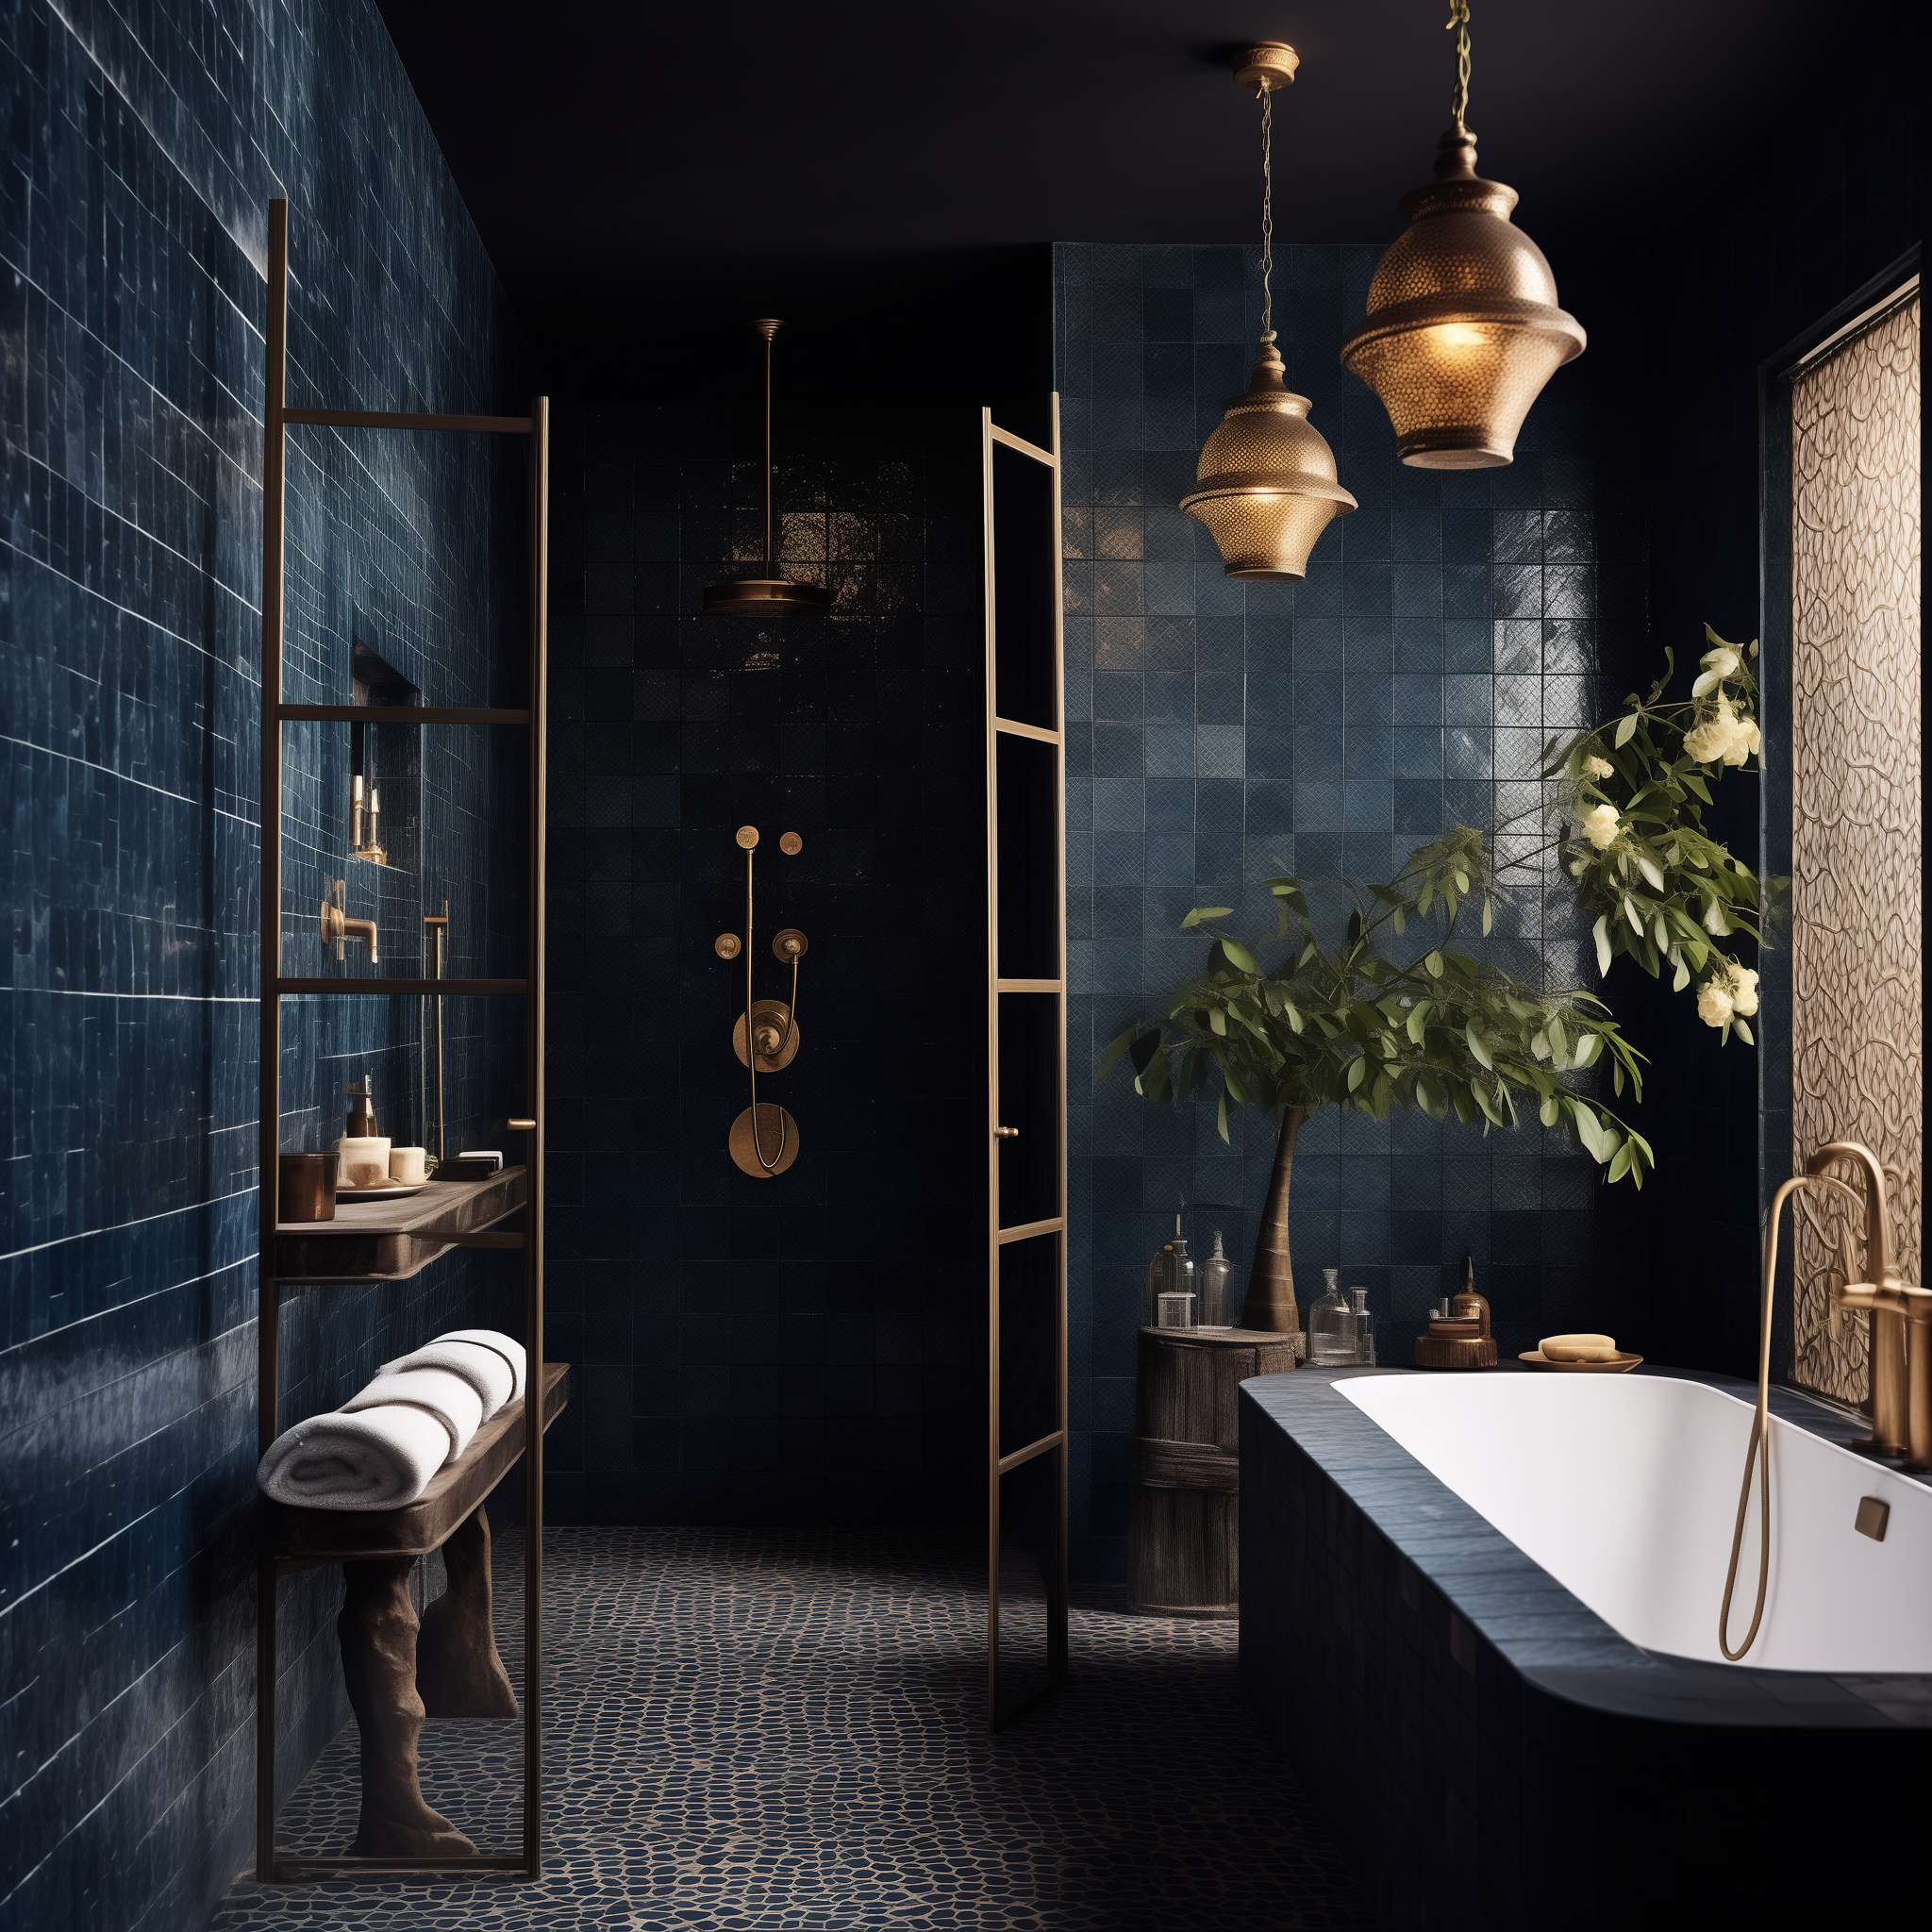 blue moroccan bathroom ideas decor style design inspired interior architecture theme